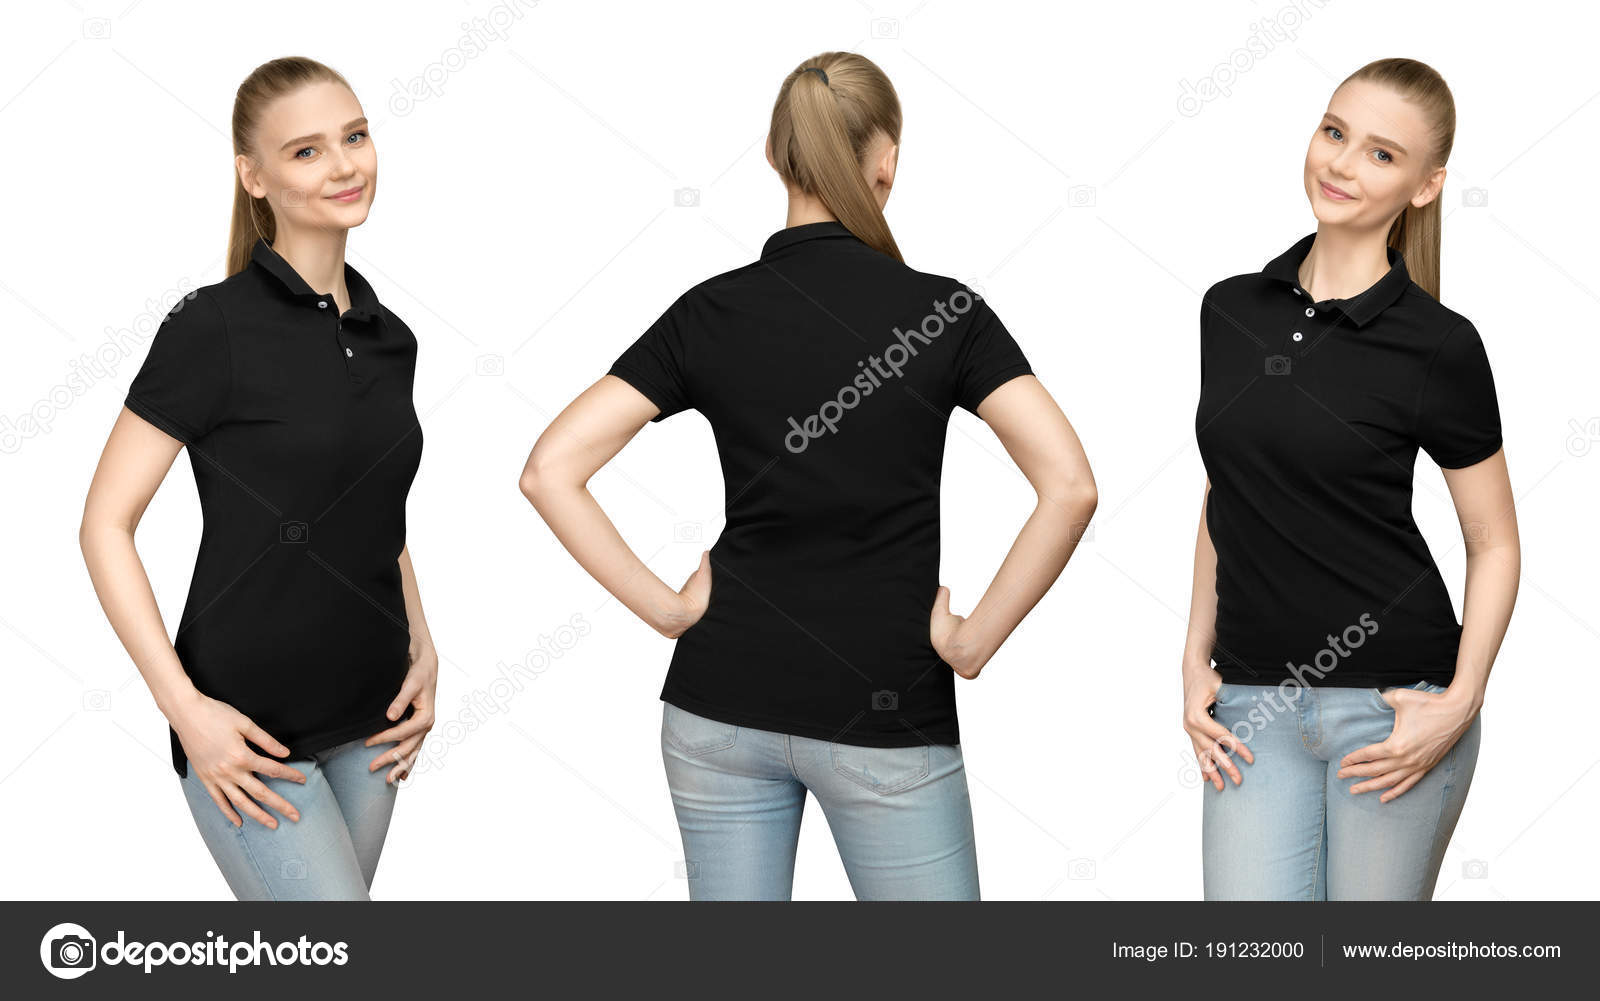 ladies black polo t shirt